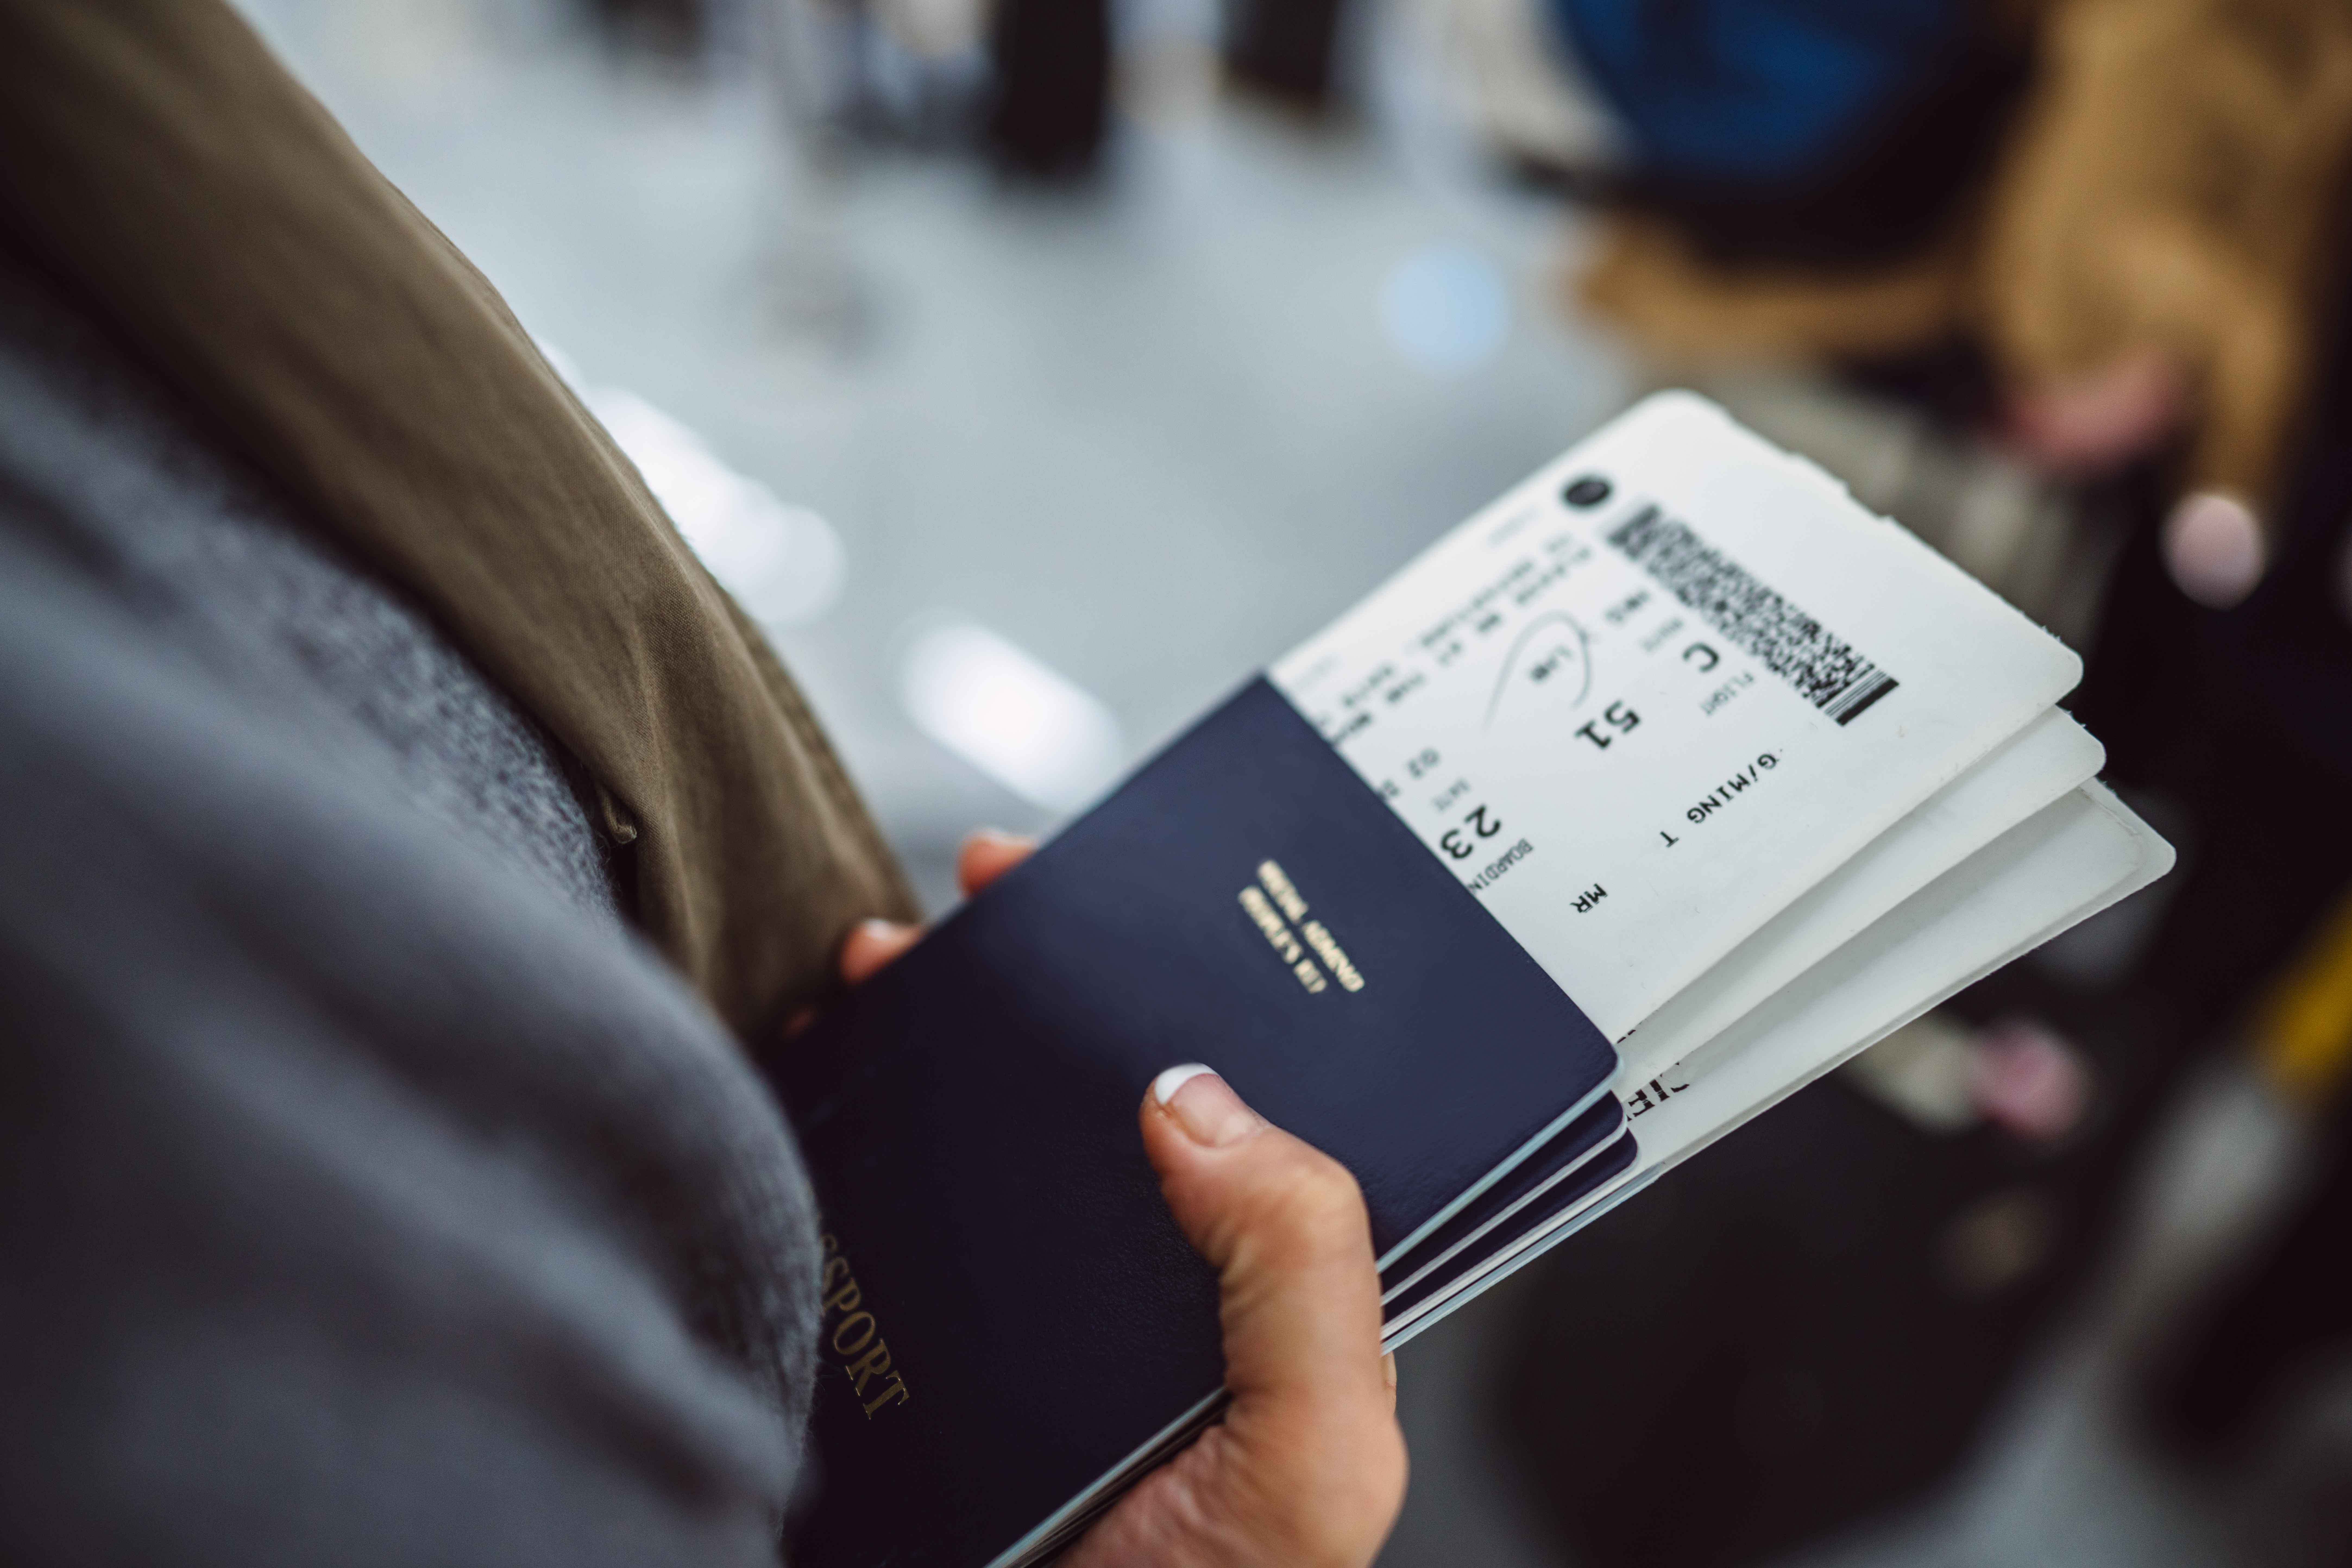 Viajar, cada vez más difícil: el primer mundo endurece sus políticas de visas y permisos de ingreso